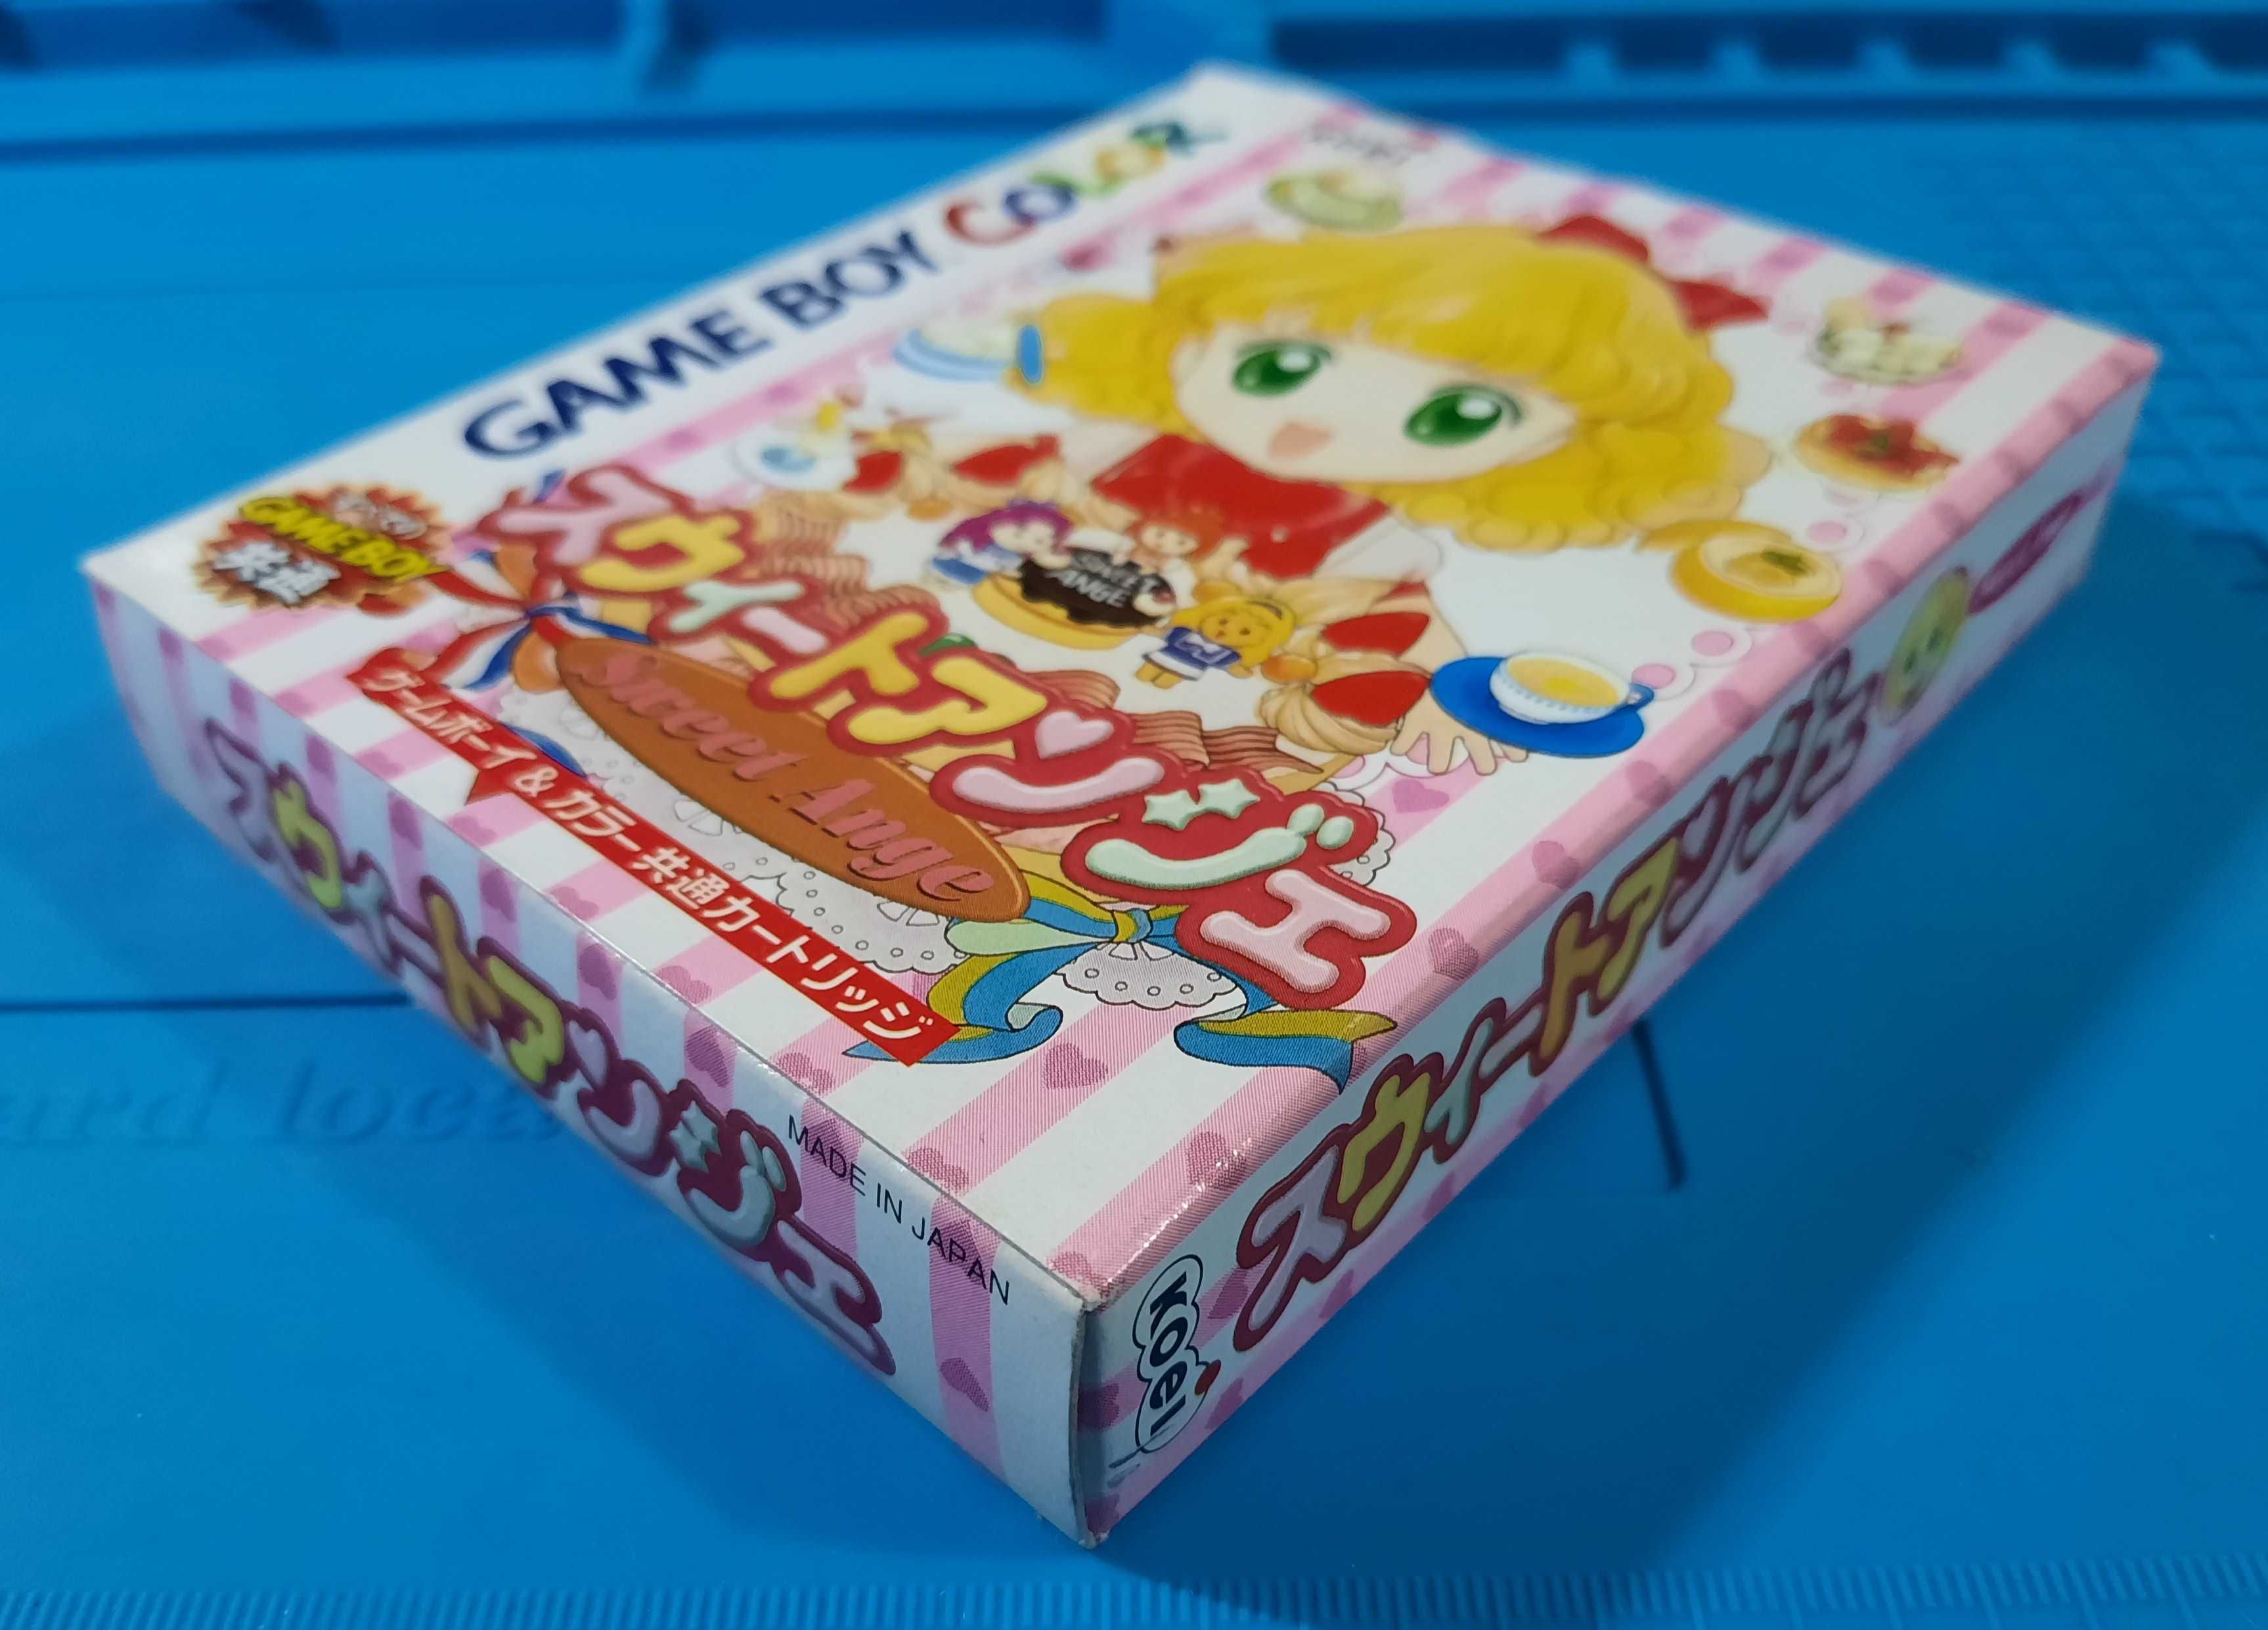 Sweet Ange / Game Boy Color (JPN)